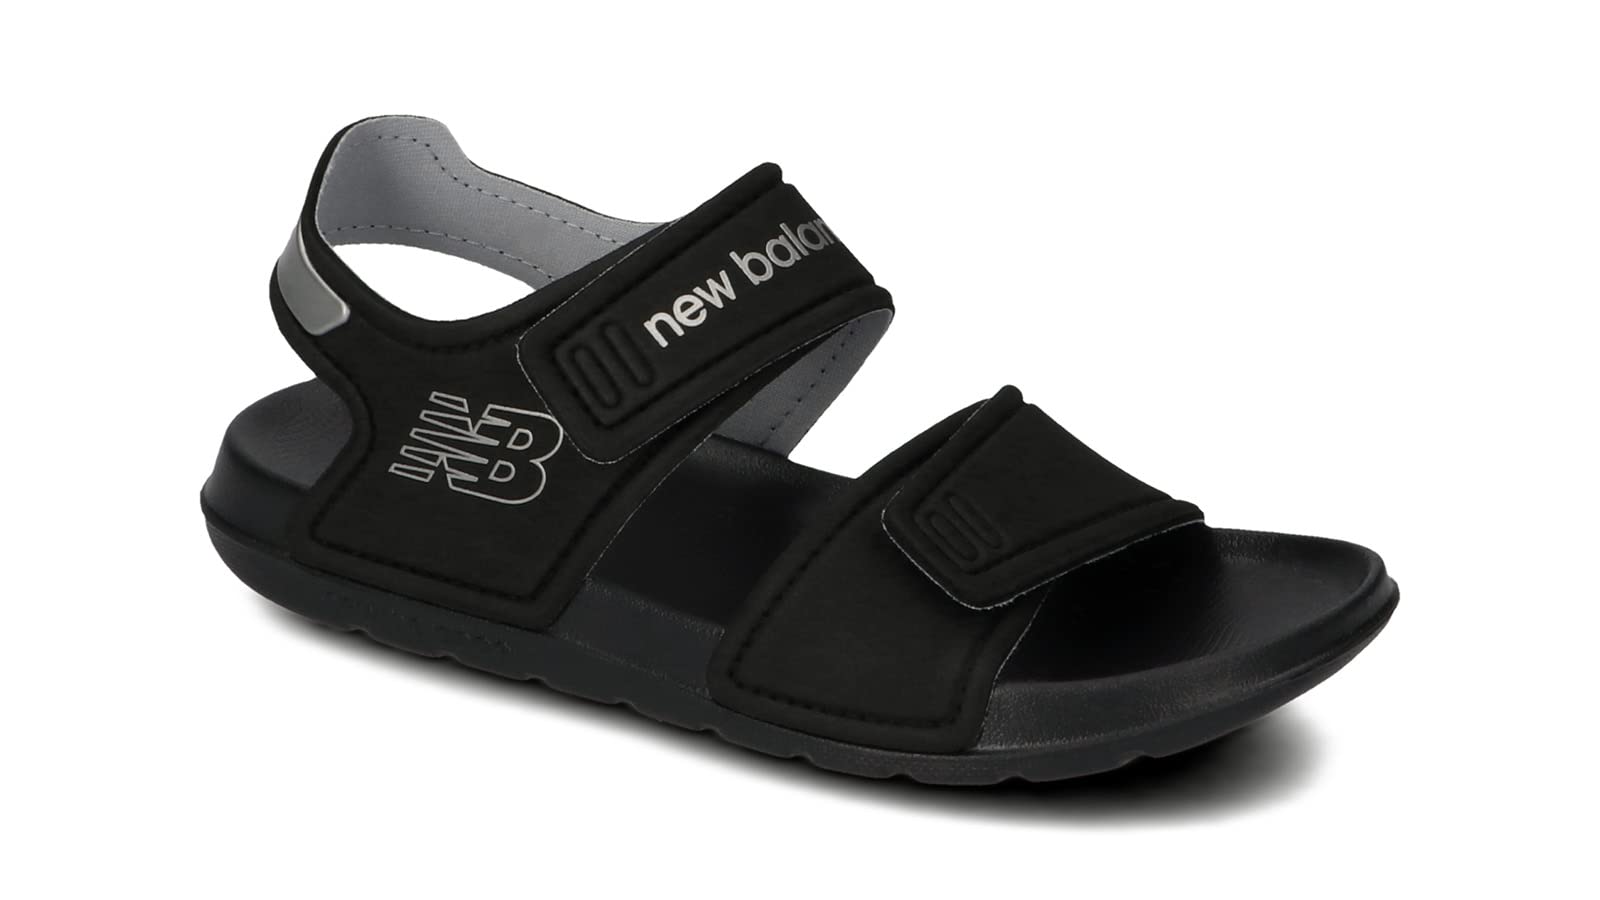 Mua New Balance SPSD YOSPSD Kids Sandals, Sports Sandals, Outdoor ...